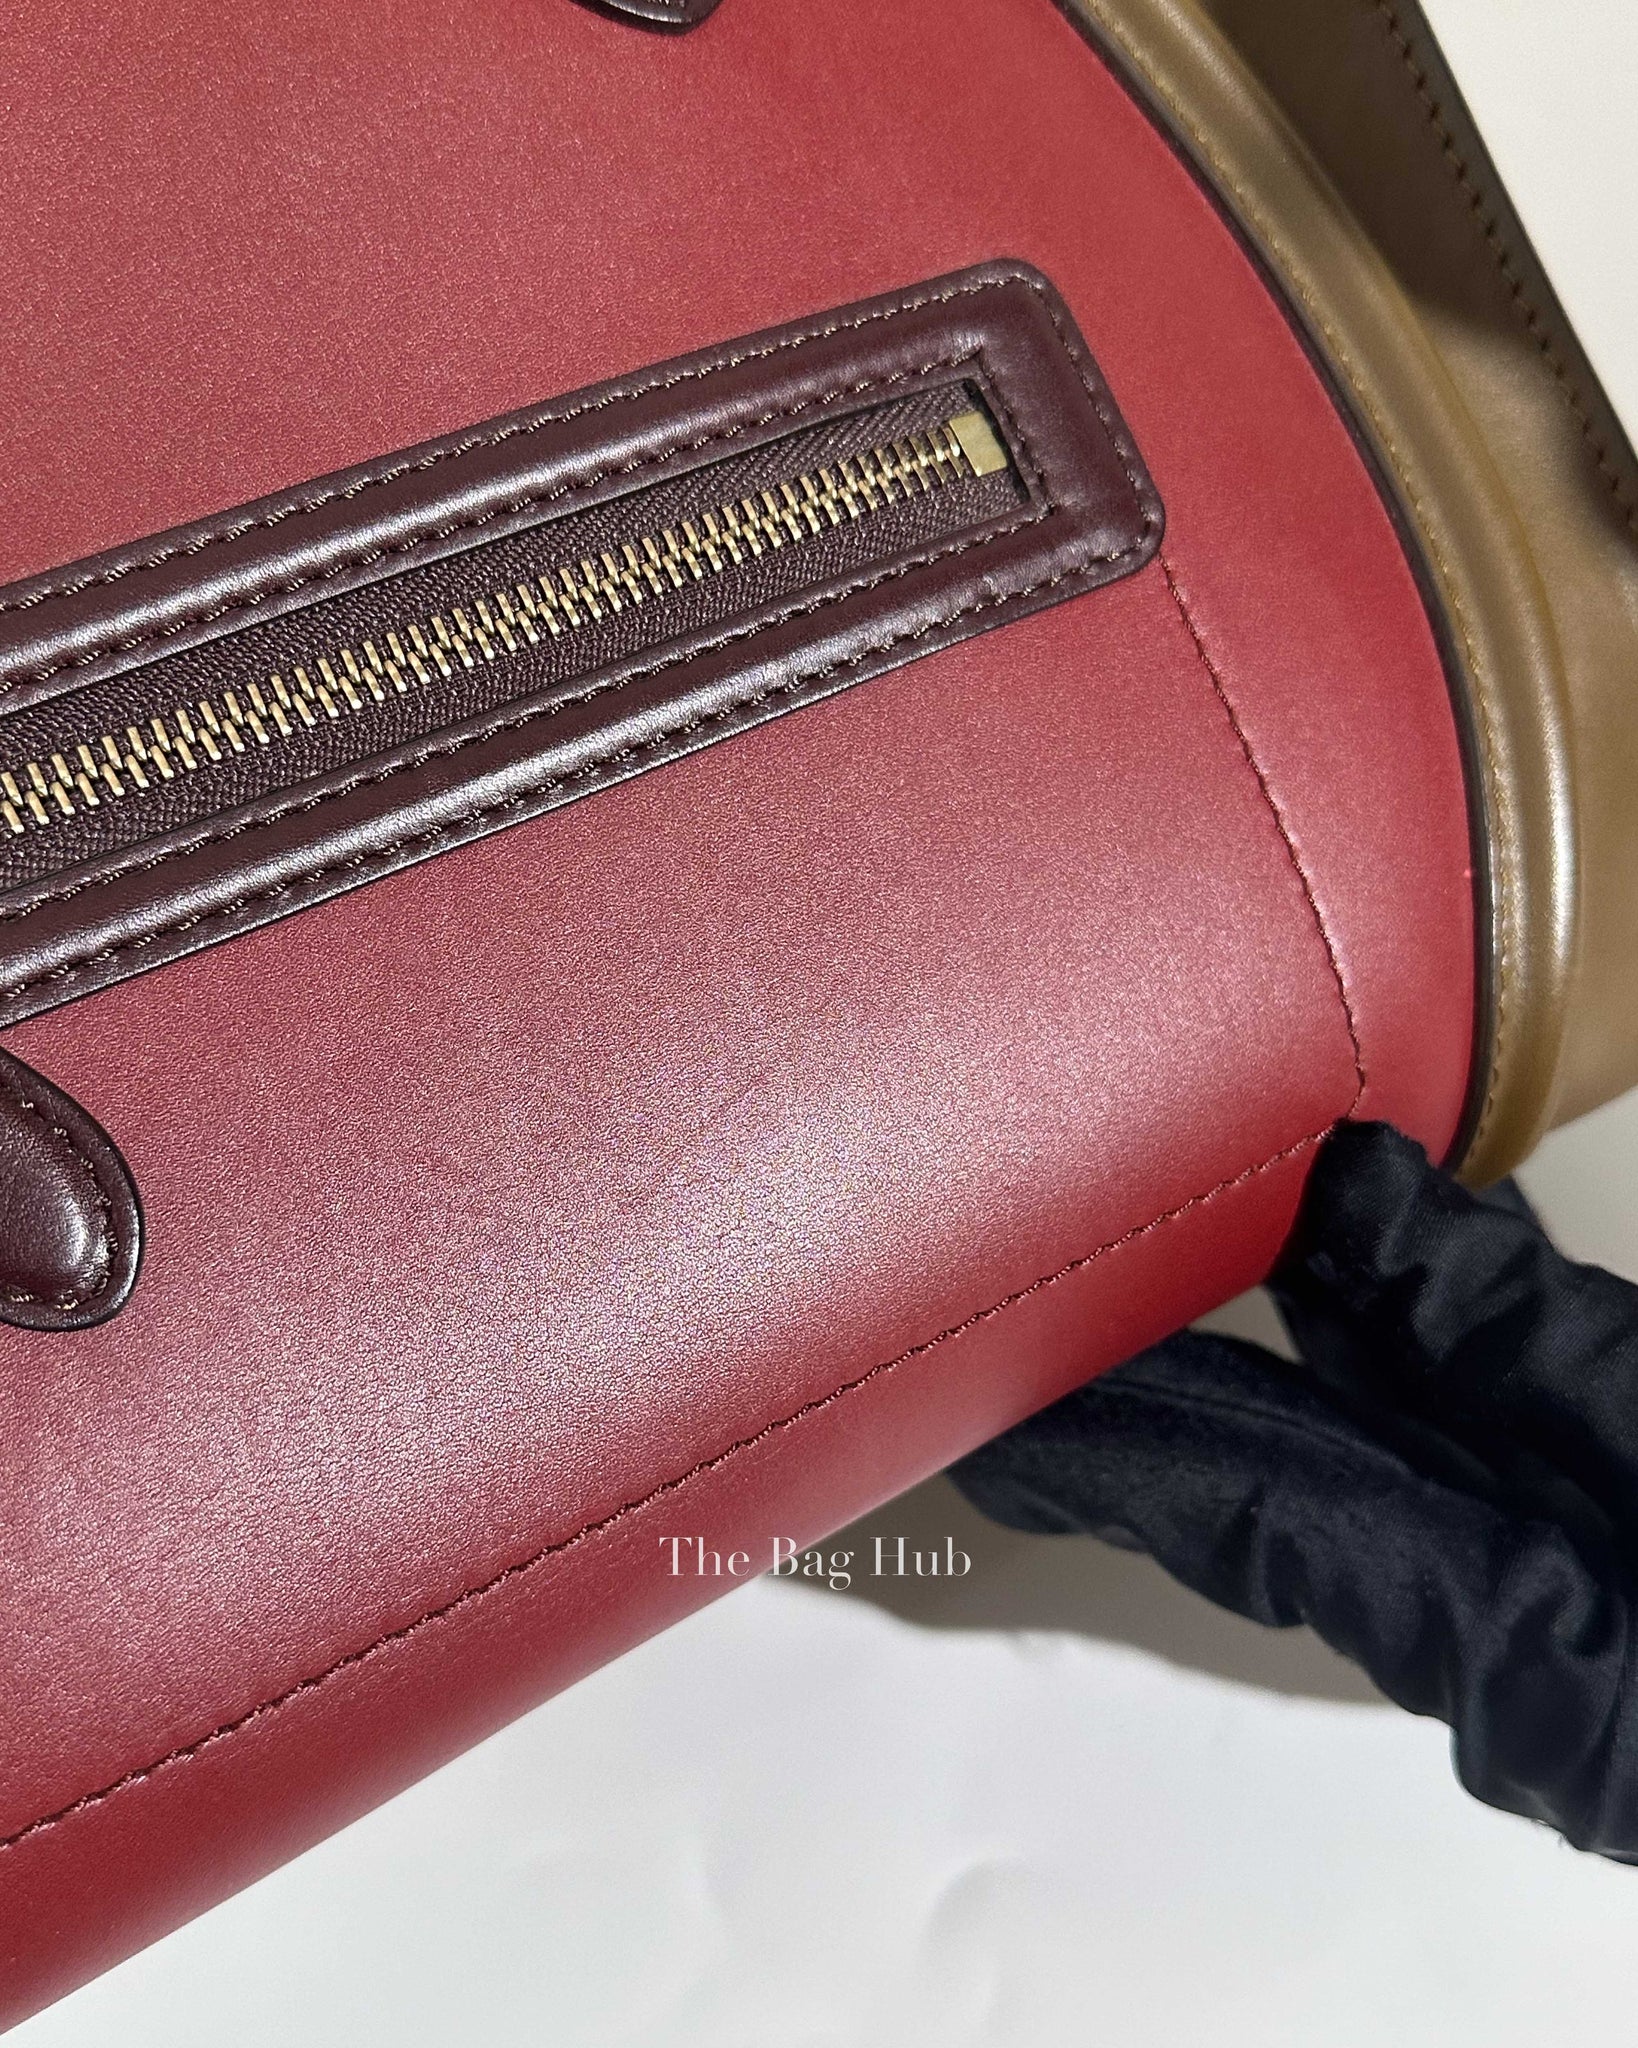 Celine Tan/Maroon/Red Leather Mini Luggage Bag